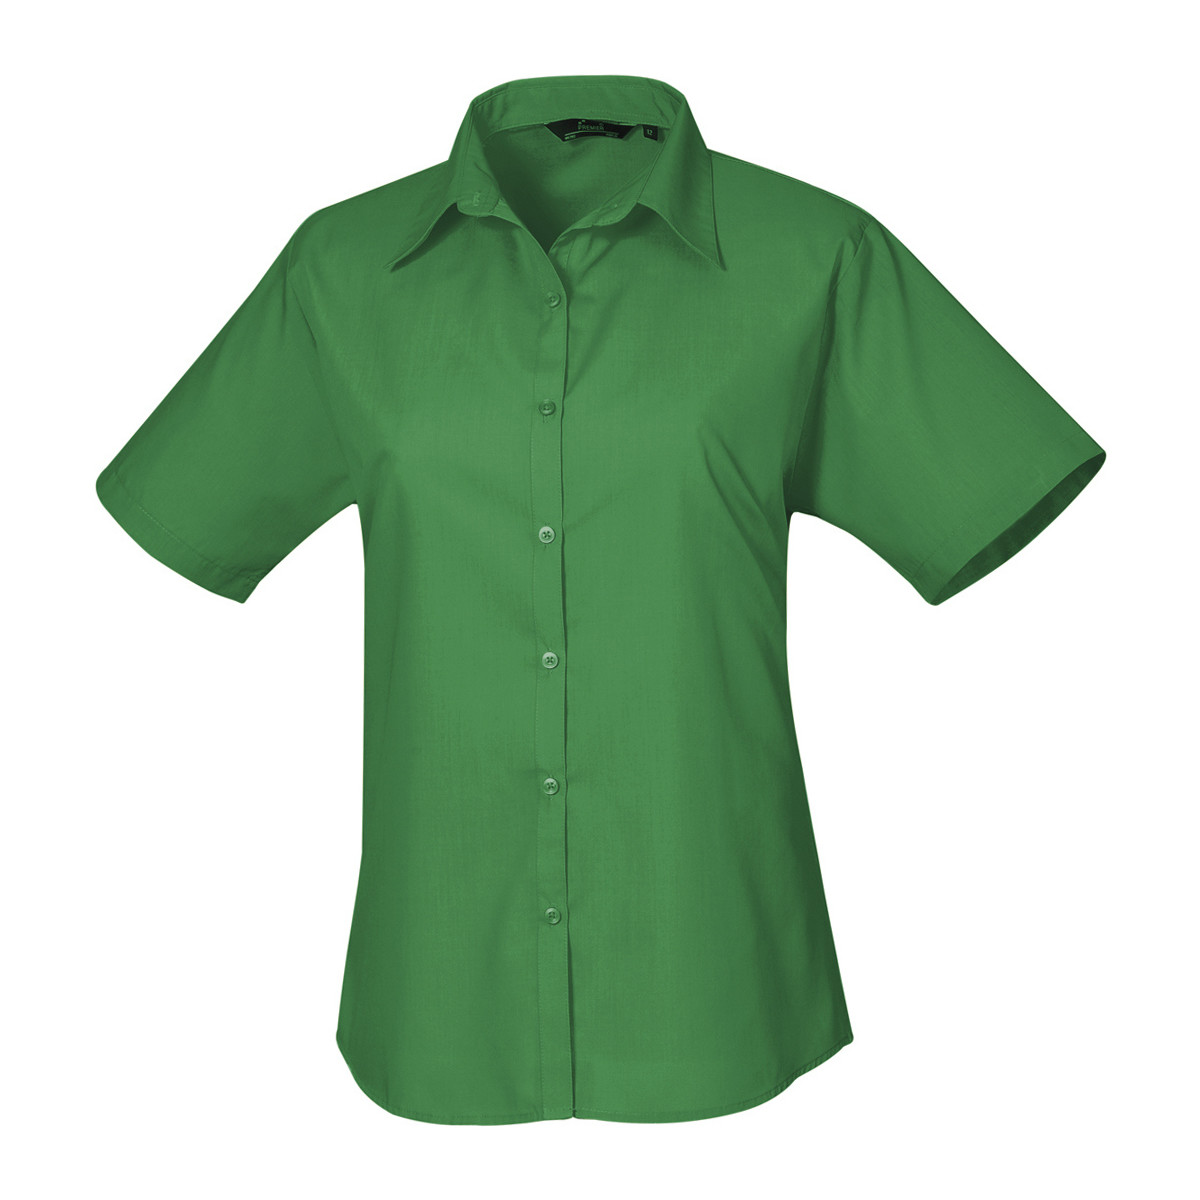 textil Mujer Camisas Premier PR302 Verde